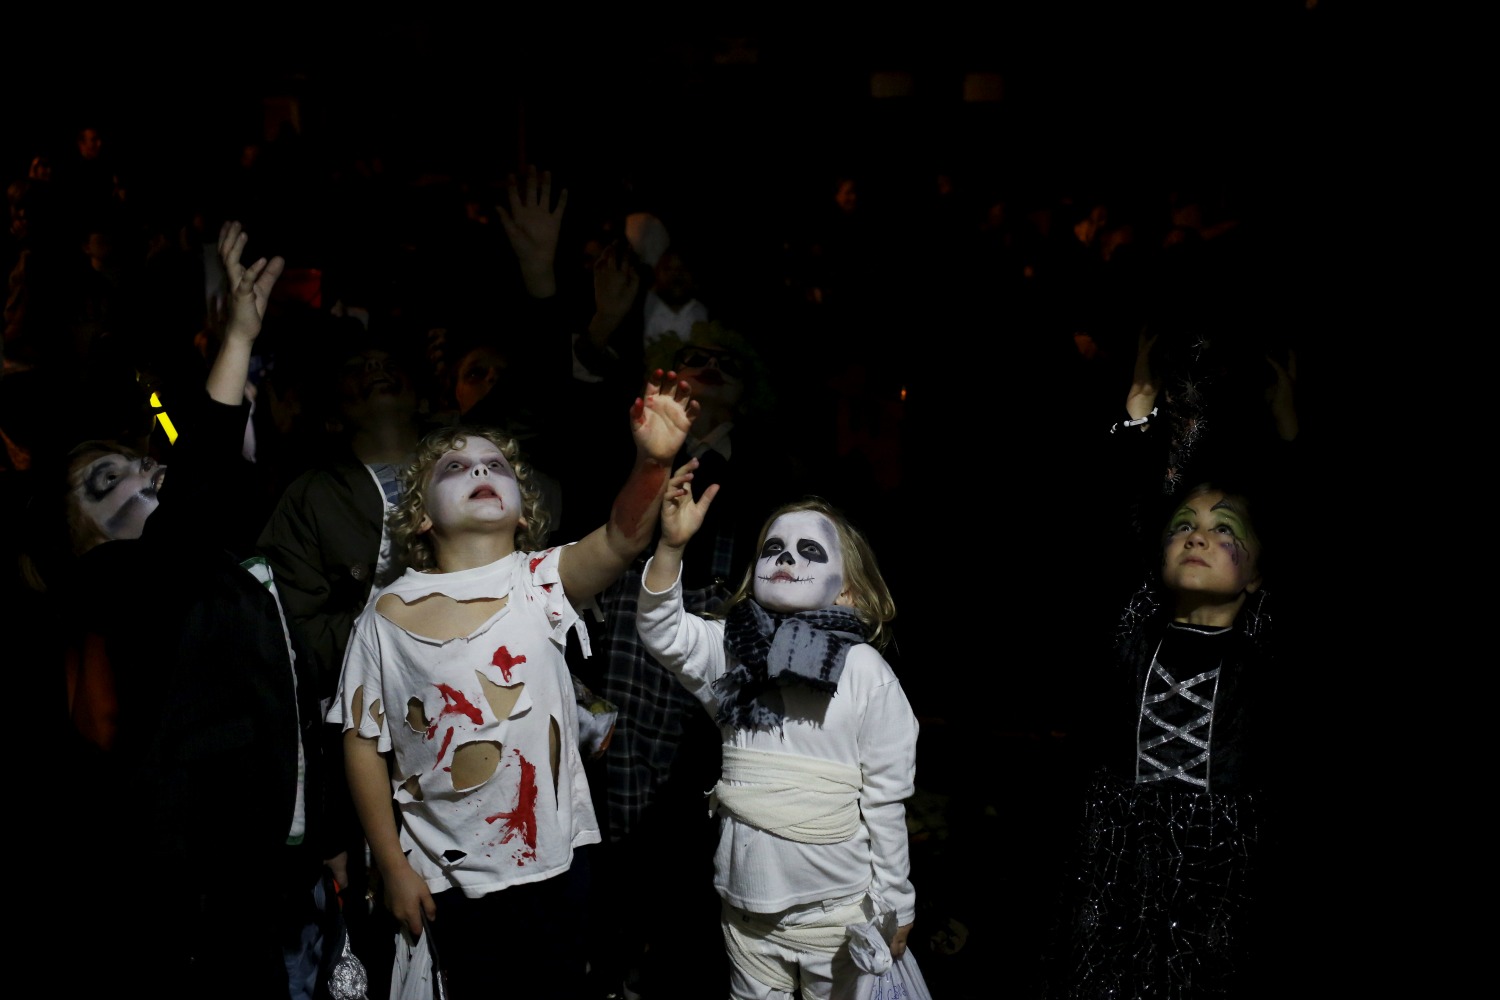 El Halloween más tradicional, con los niños como protagonistas